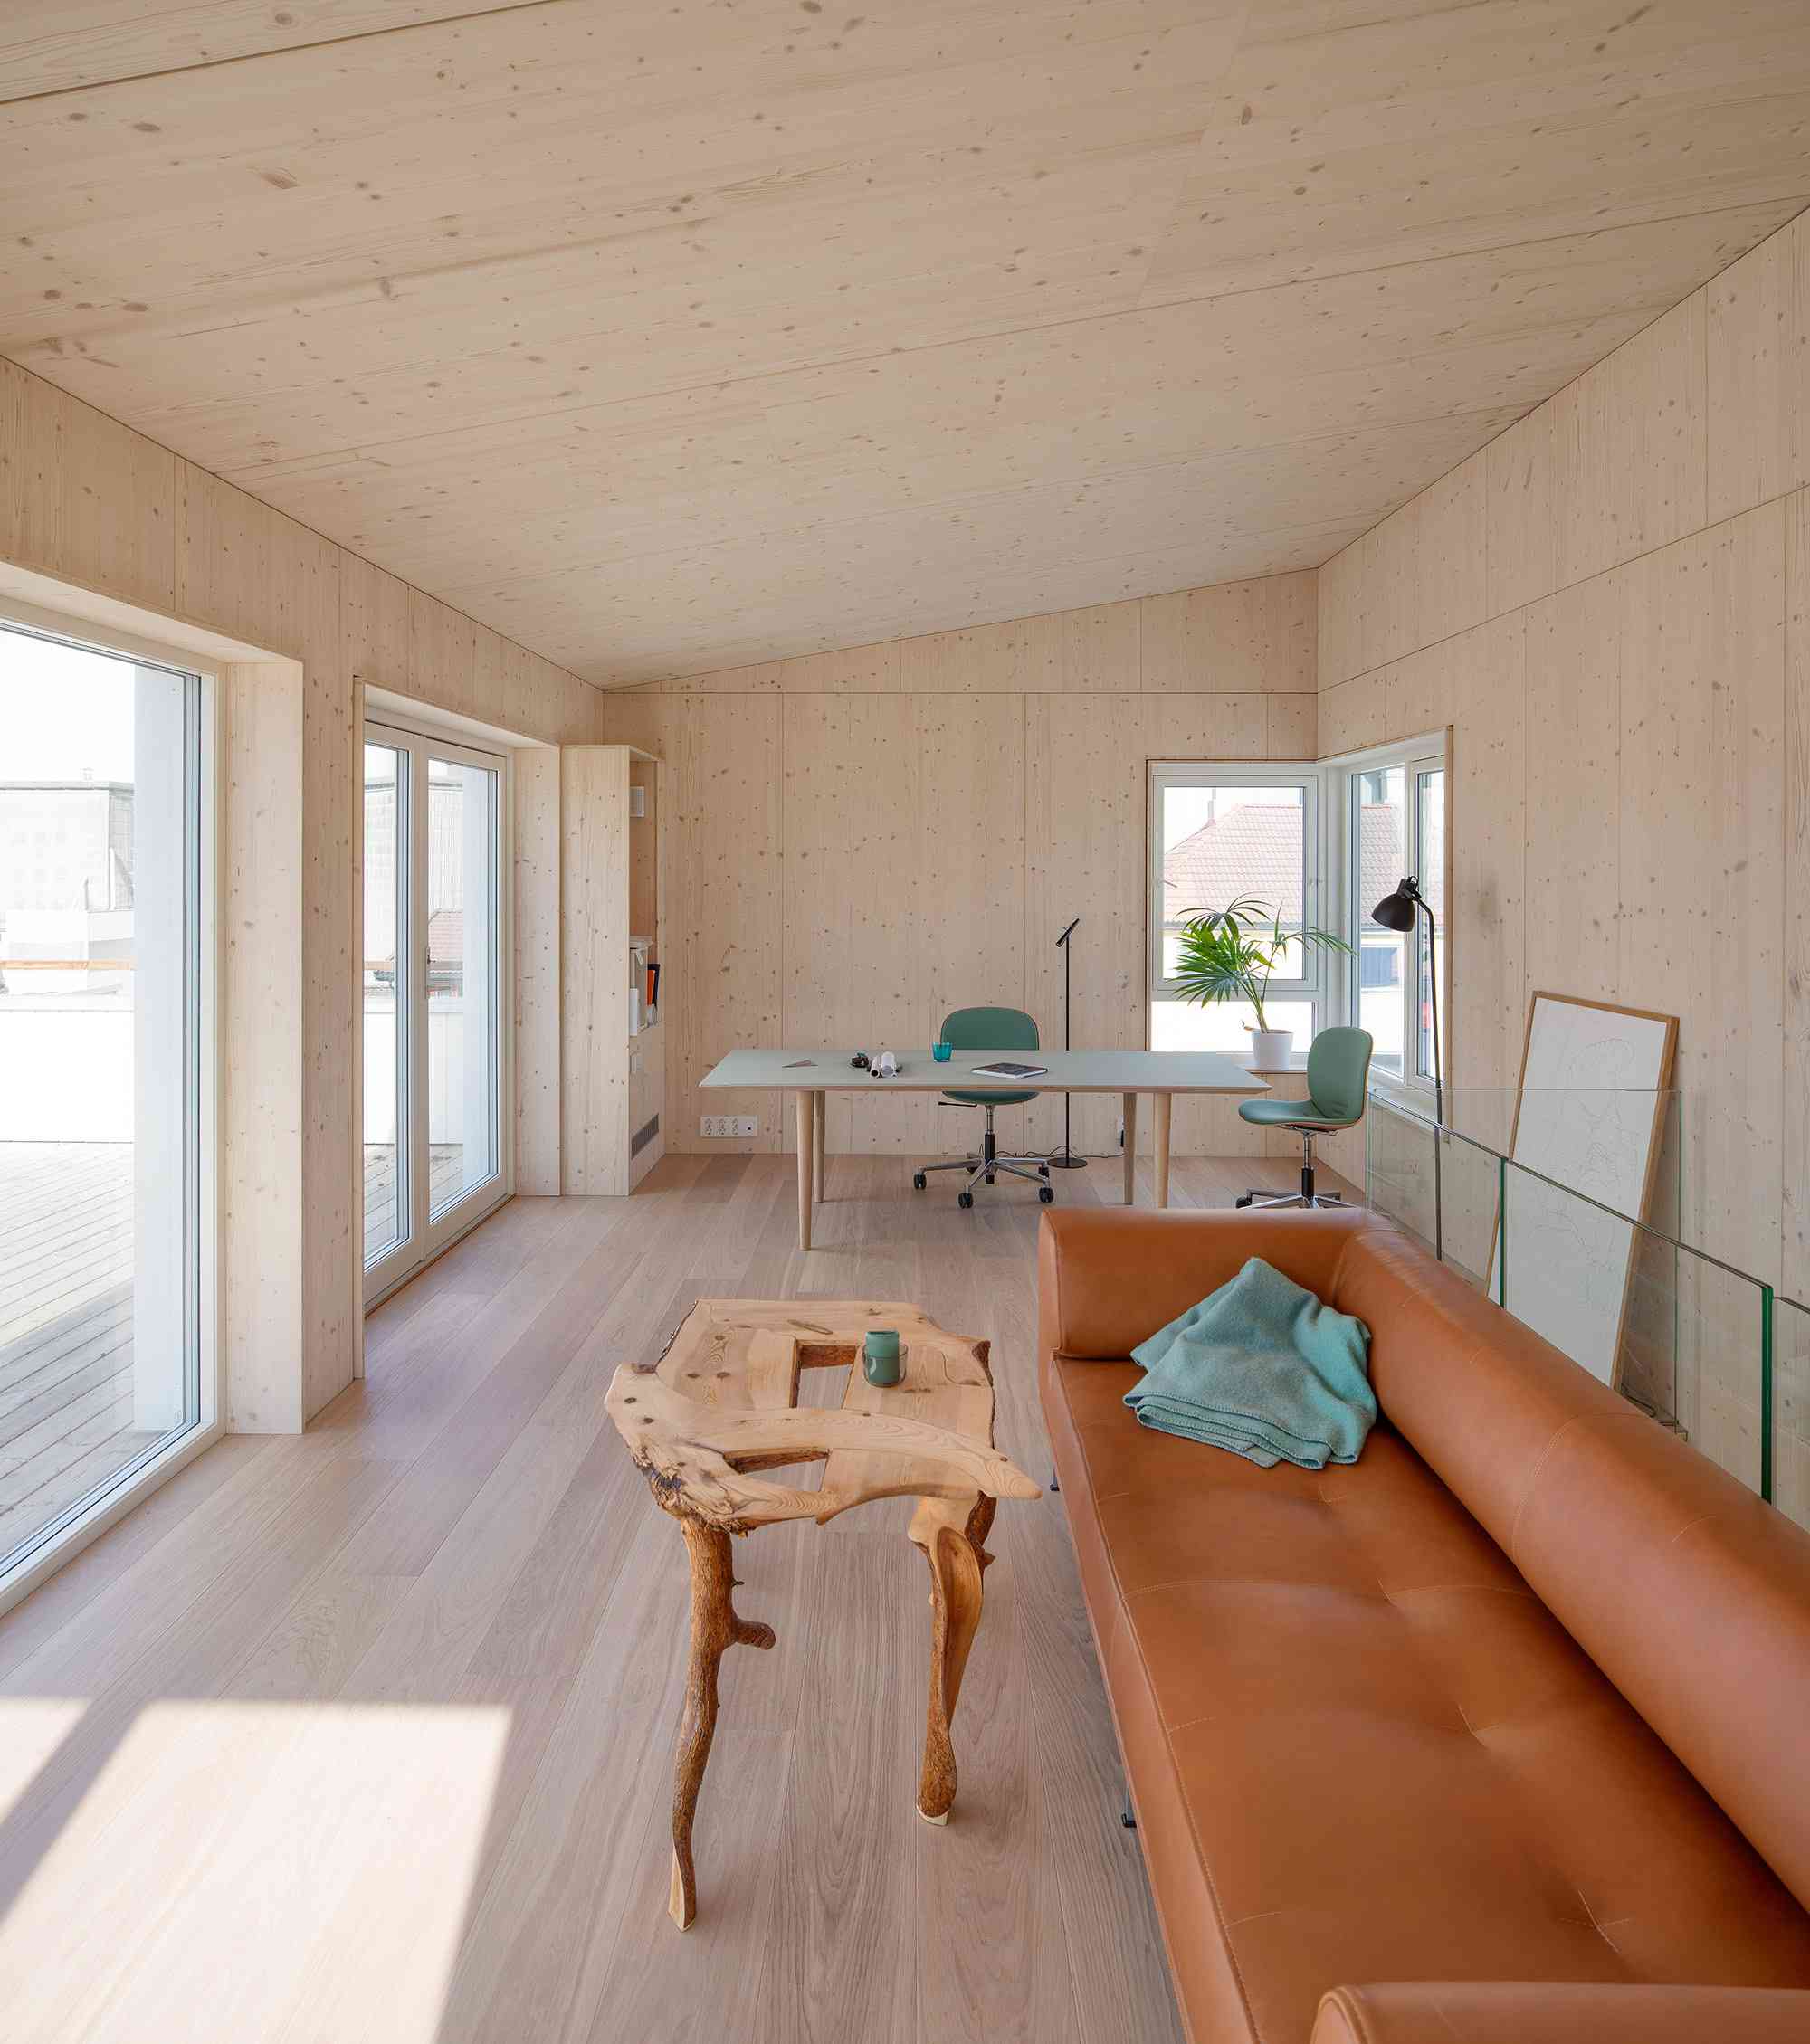 Vindmøllebakken海伦&硬建筑师室内公共住宅项目的单位”width=